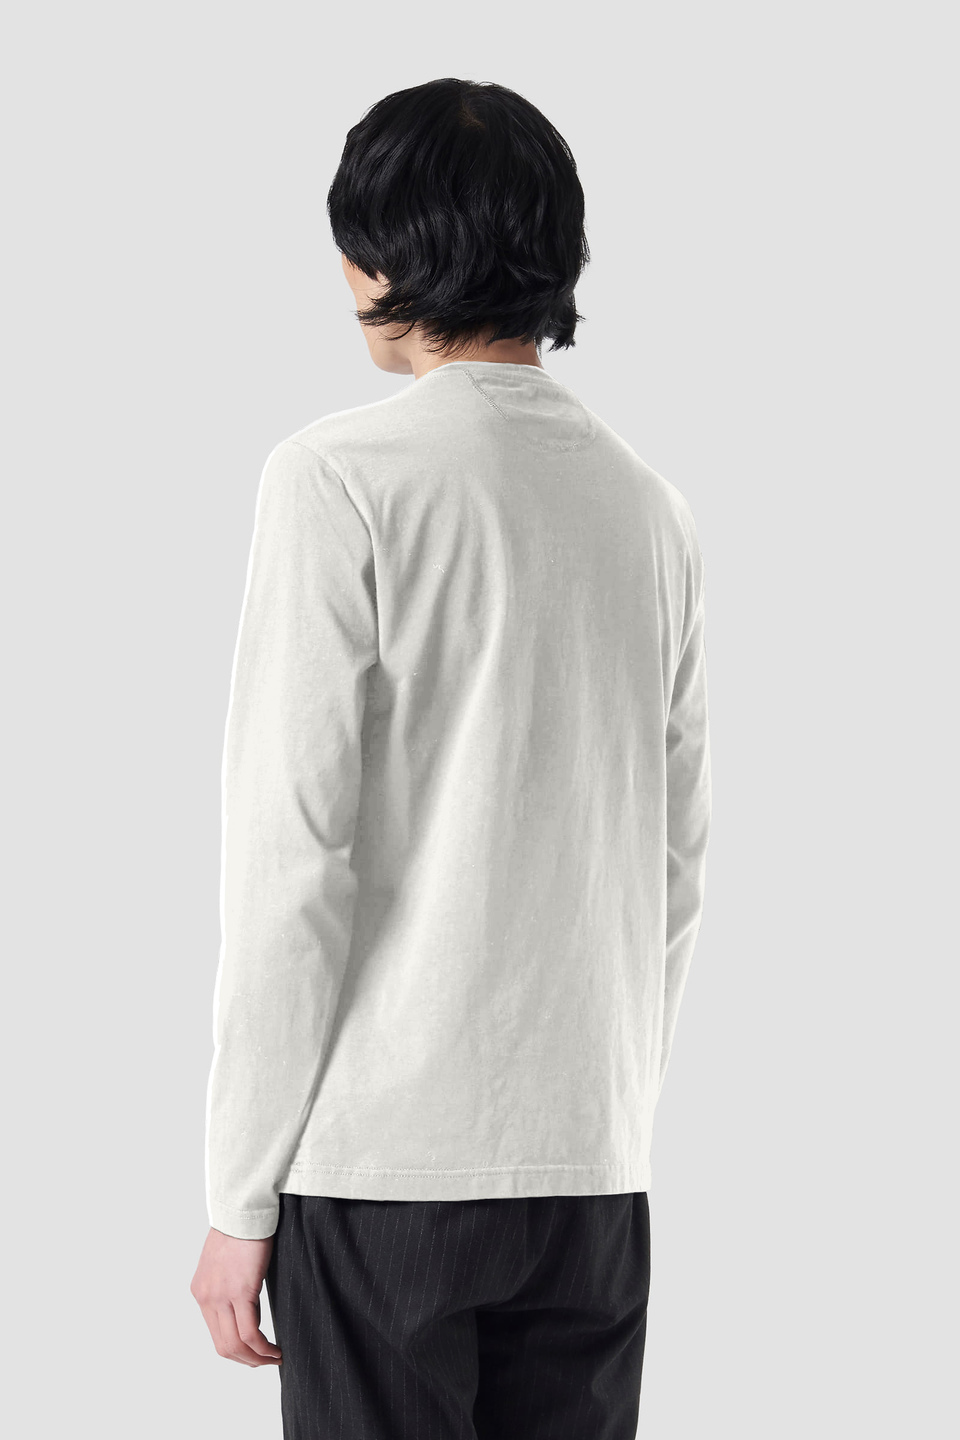 T-Shirt aus Baumwolle mit Print | La Martina - Official Online Shop